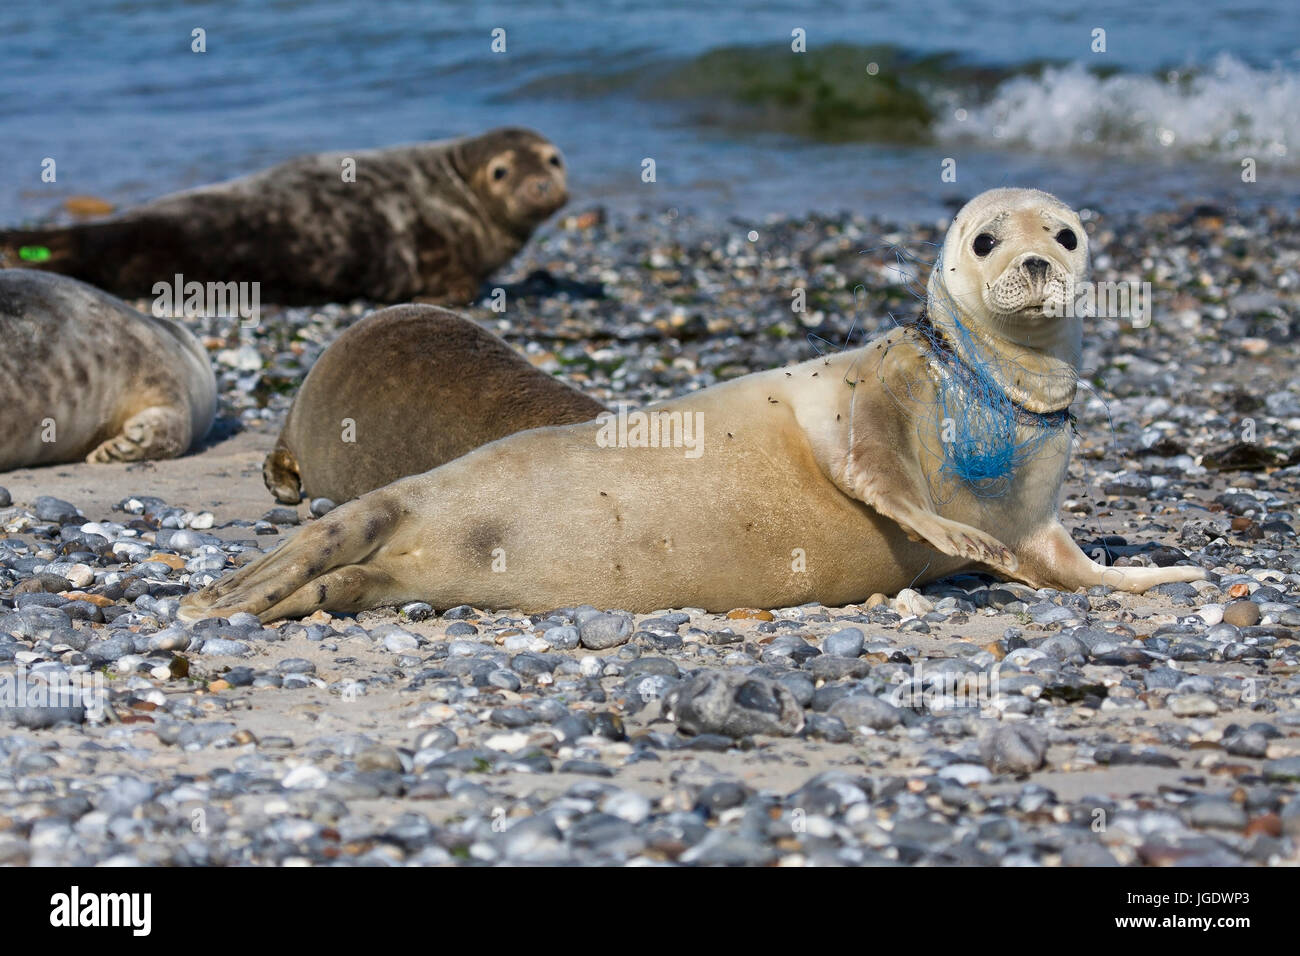 Seal, Phoca vitulina in the neck injures by fishing net, Seehund (Phoca vitulina) am Hals verletzt durch Fischernetz Stock Photo